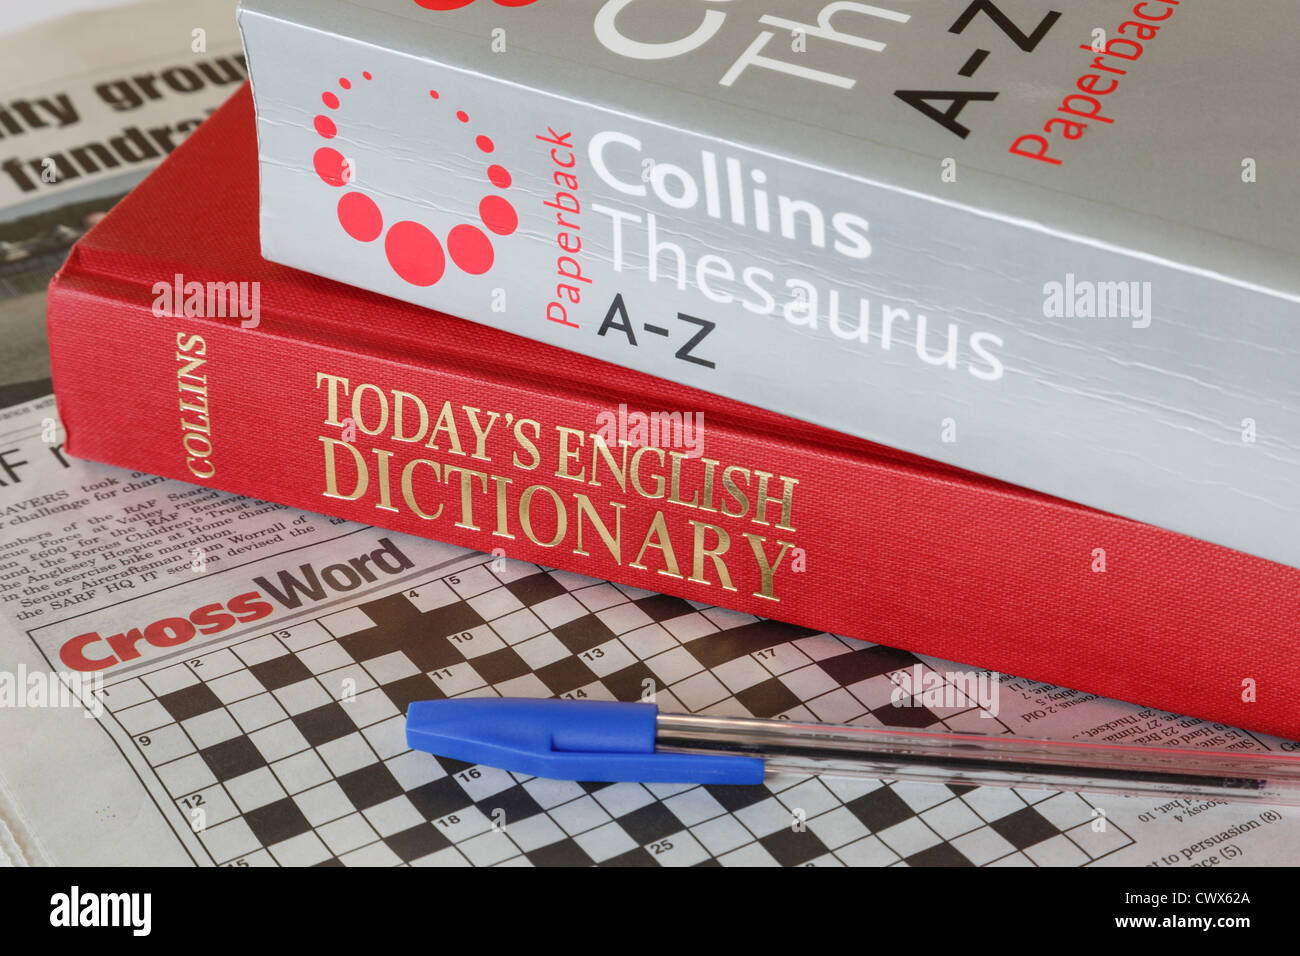 Collins A-Z Thesaurus e oggi il dizionario inglese libri con un giornale cruciverba e penna. Inghilterra Regno Unito Gran Bretagna Foto Stock